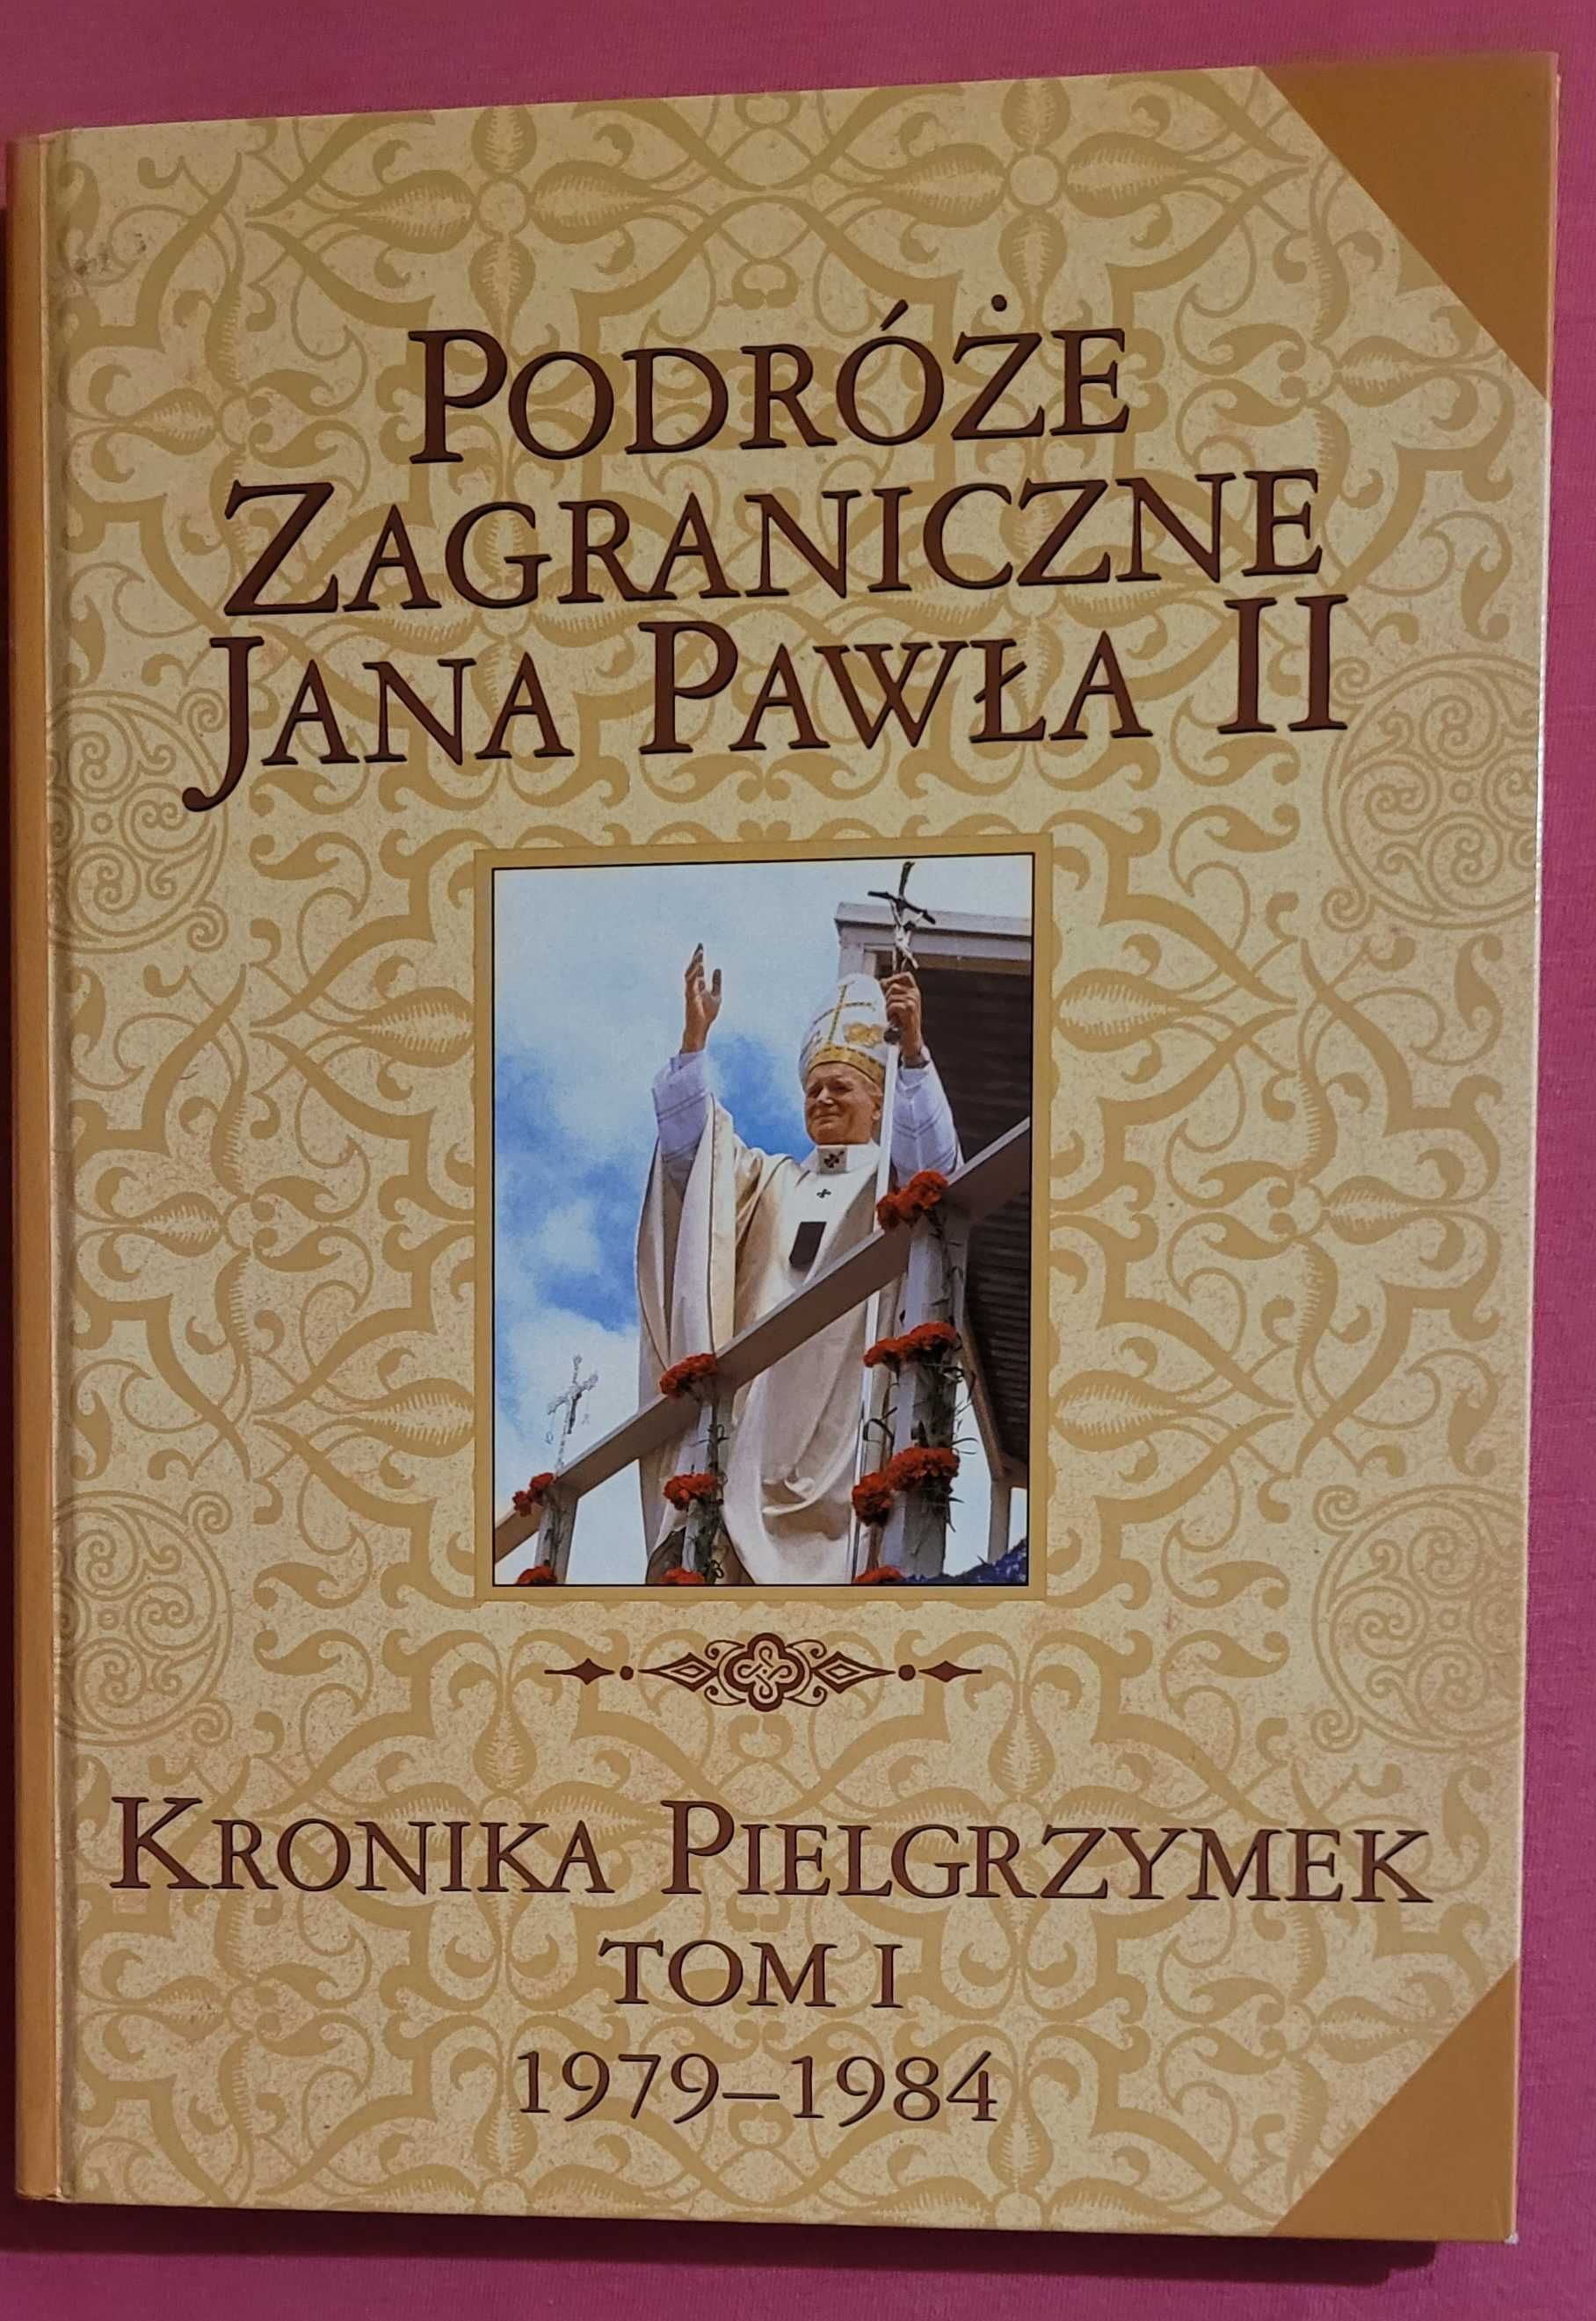 Kroniki Pielgrzymek "Podroze zagraniczne JANA PAWLA II" lata 1979/2004